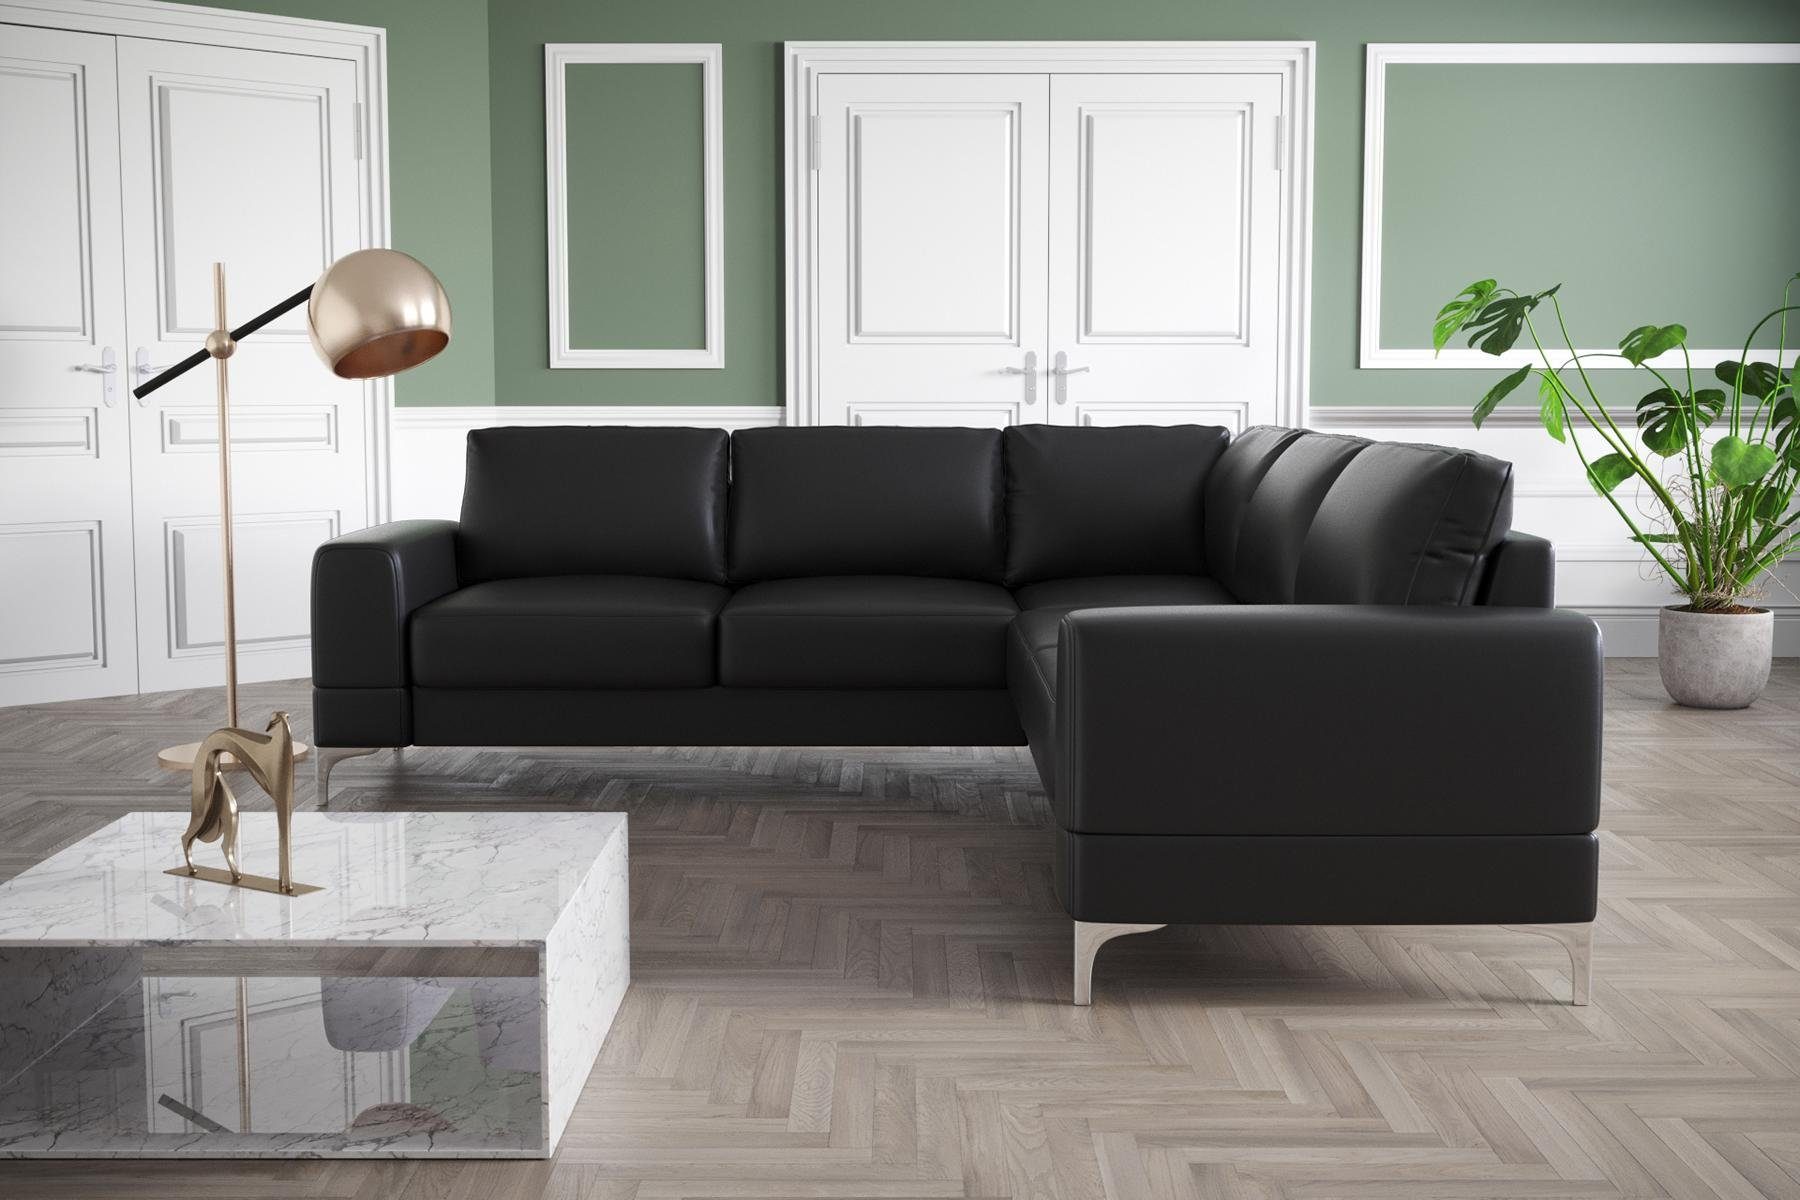 JVmoebel Ecksofa, Textil Ecksofa Schwarz Design Couch L-Form Wohnzimmer Möbel Türkis Modern